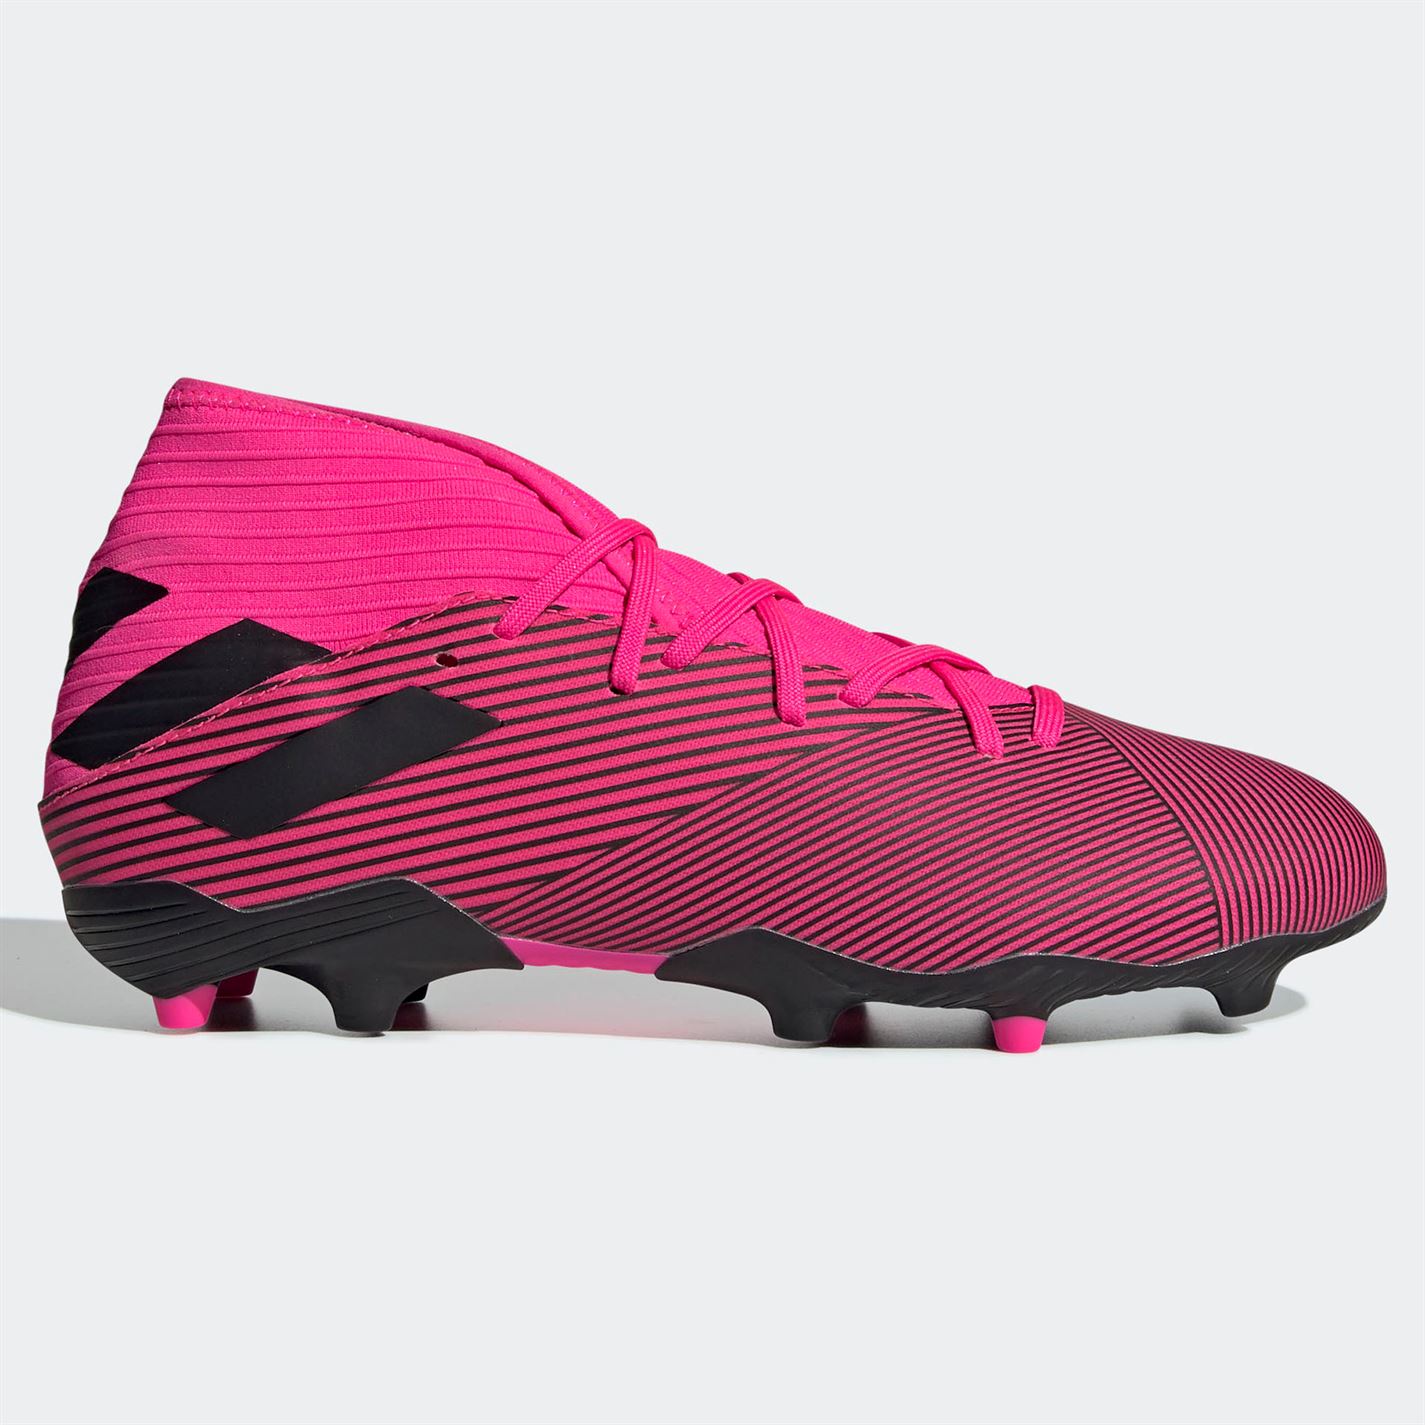 Adidas Nemeziz 19.3 FG Men’s Football Boots